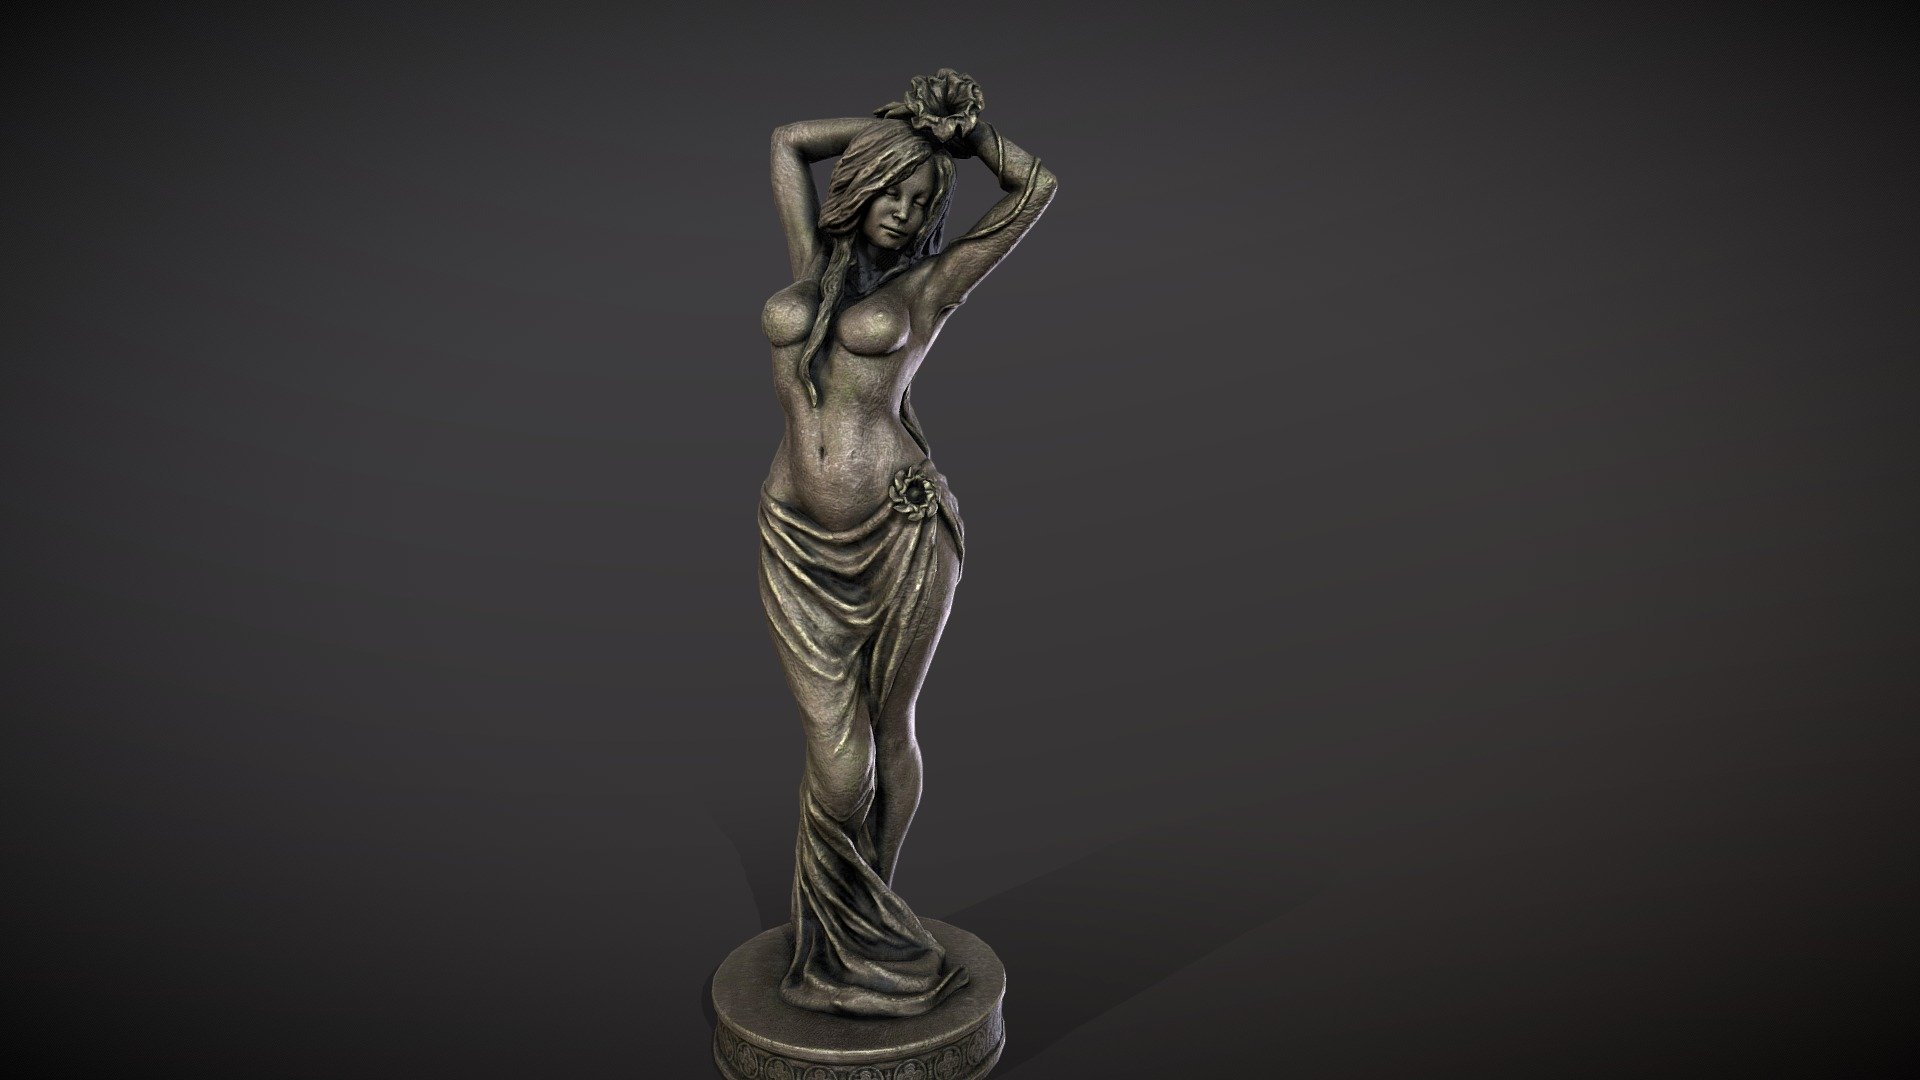 Statue of Dibella - Statue of Dibella - 3D model by Mandrake (@mandrake_3d) 3d model